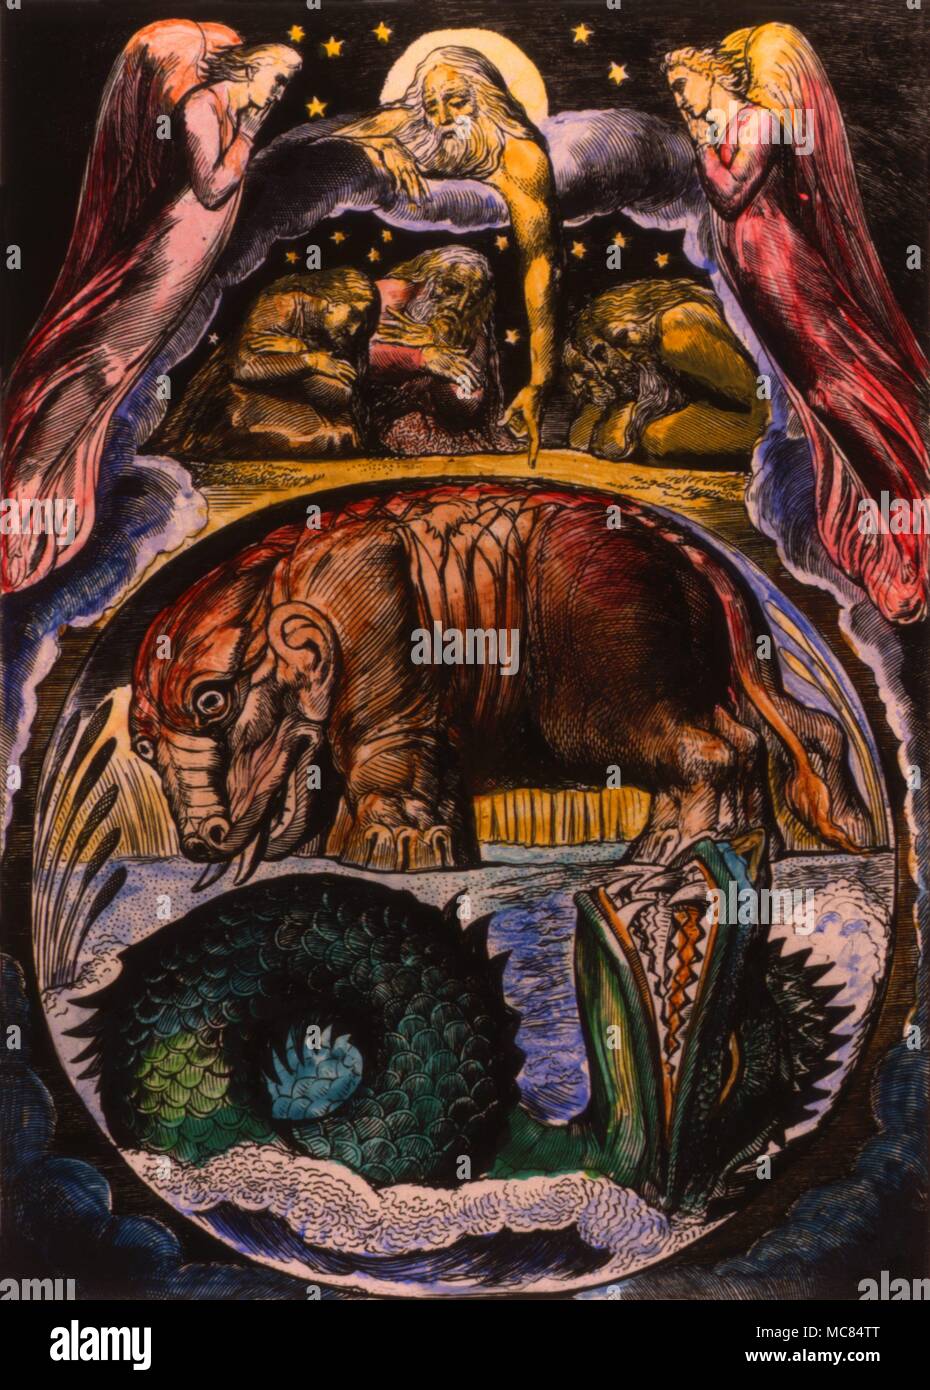 Il demone-forme di Behemoth e Leviathan come visualizzata da William Blake nel suo 'illustrazione per il libro di Giobbe", 1825. Ippopotamo-come mostro è Behemoth. Foto Stock